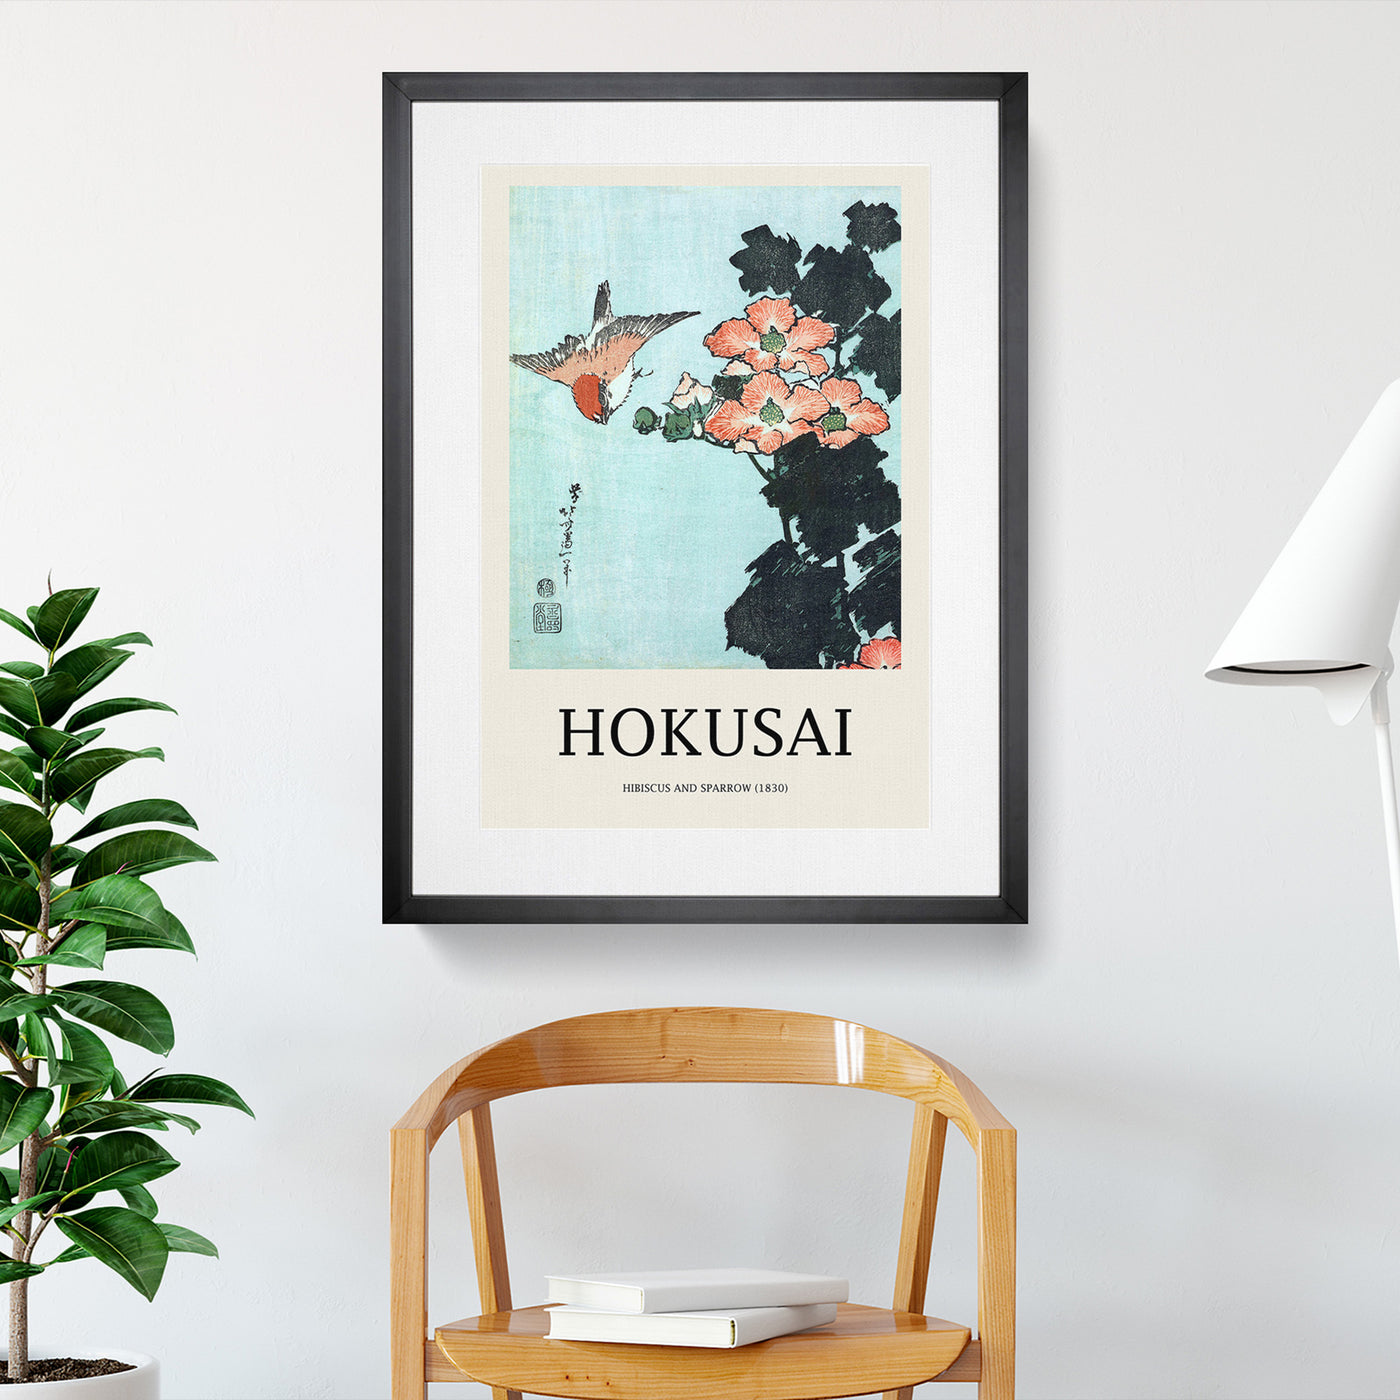 Hibiscus And Sparrow Print By Katsushika Hokusai